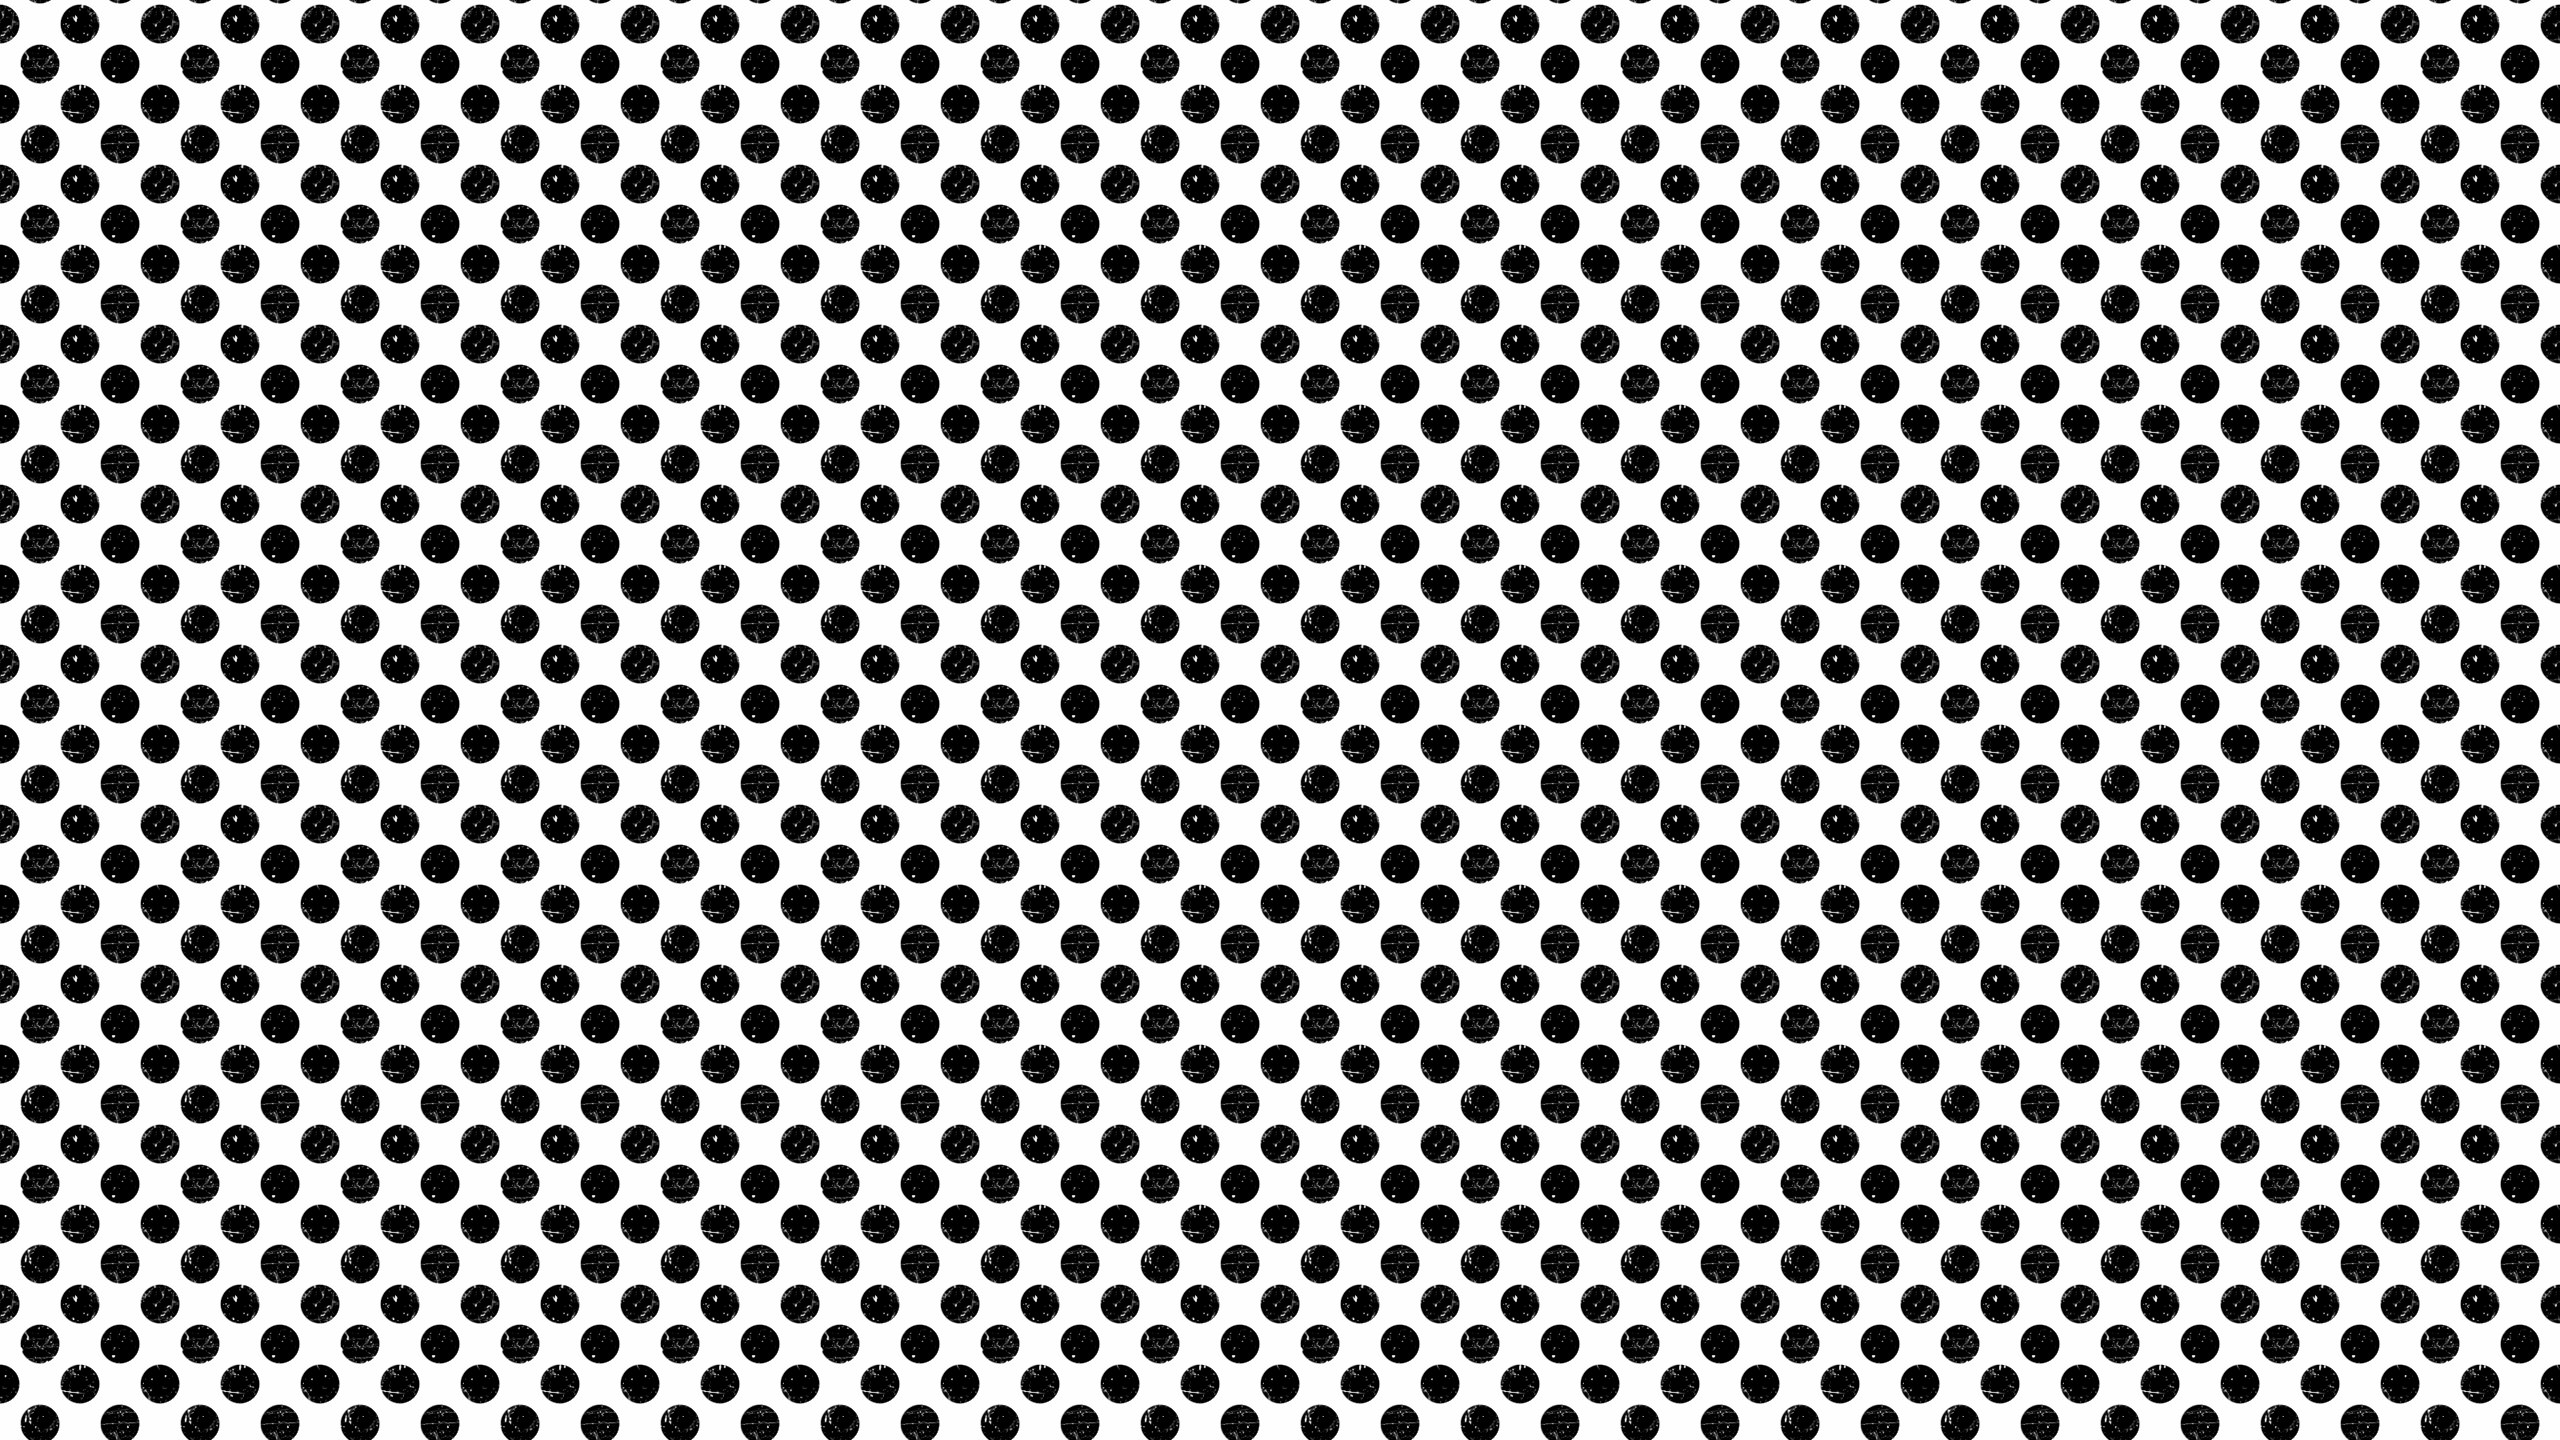 20 Cool Polka Dot Wallpapers 2560x1440